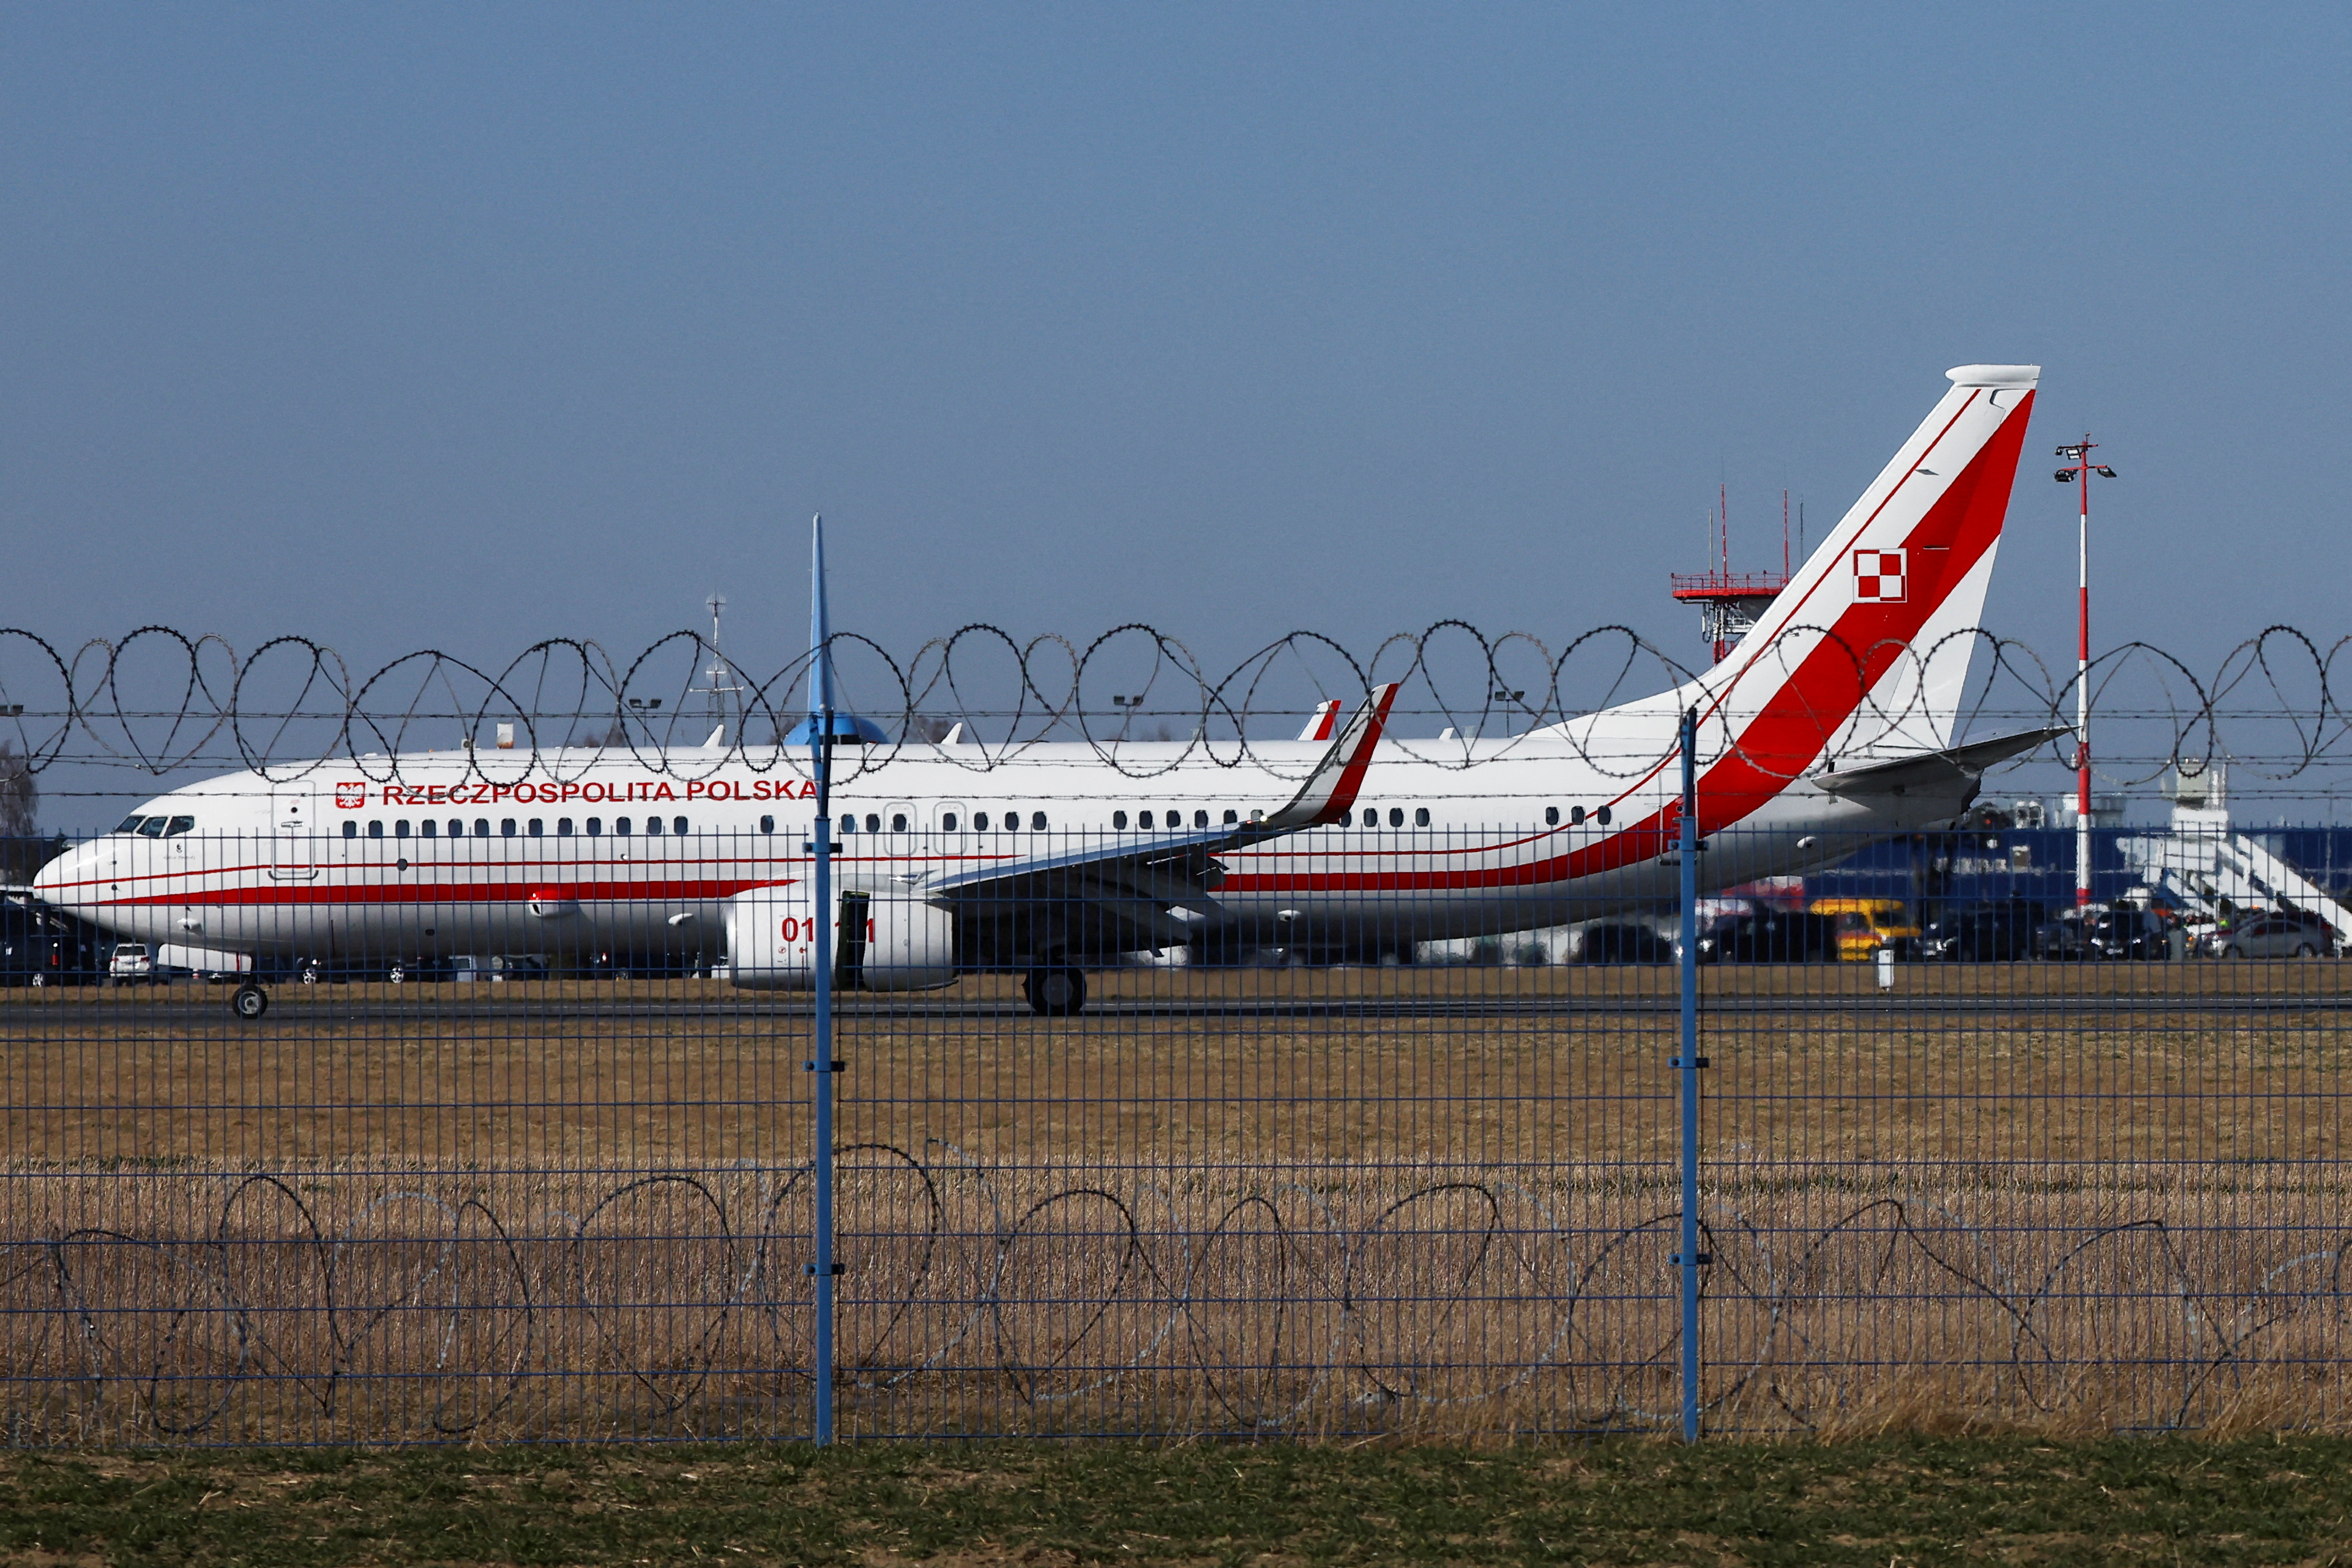 Un avión gubernamental polaco que transporta al presidente polaco, Andrzej Duda, aterriza en el aeropuerto de Rzeszow-Jasionka, cerca de Rzeszow, Polonia, 25 de marzo de 2022. REUTERS/Kacper Pempel